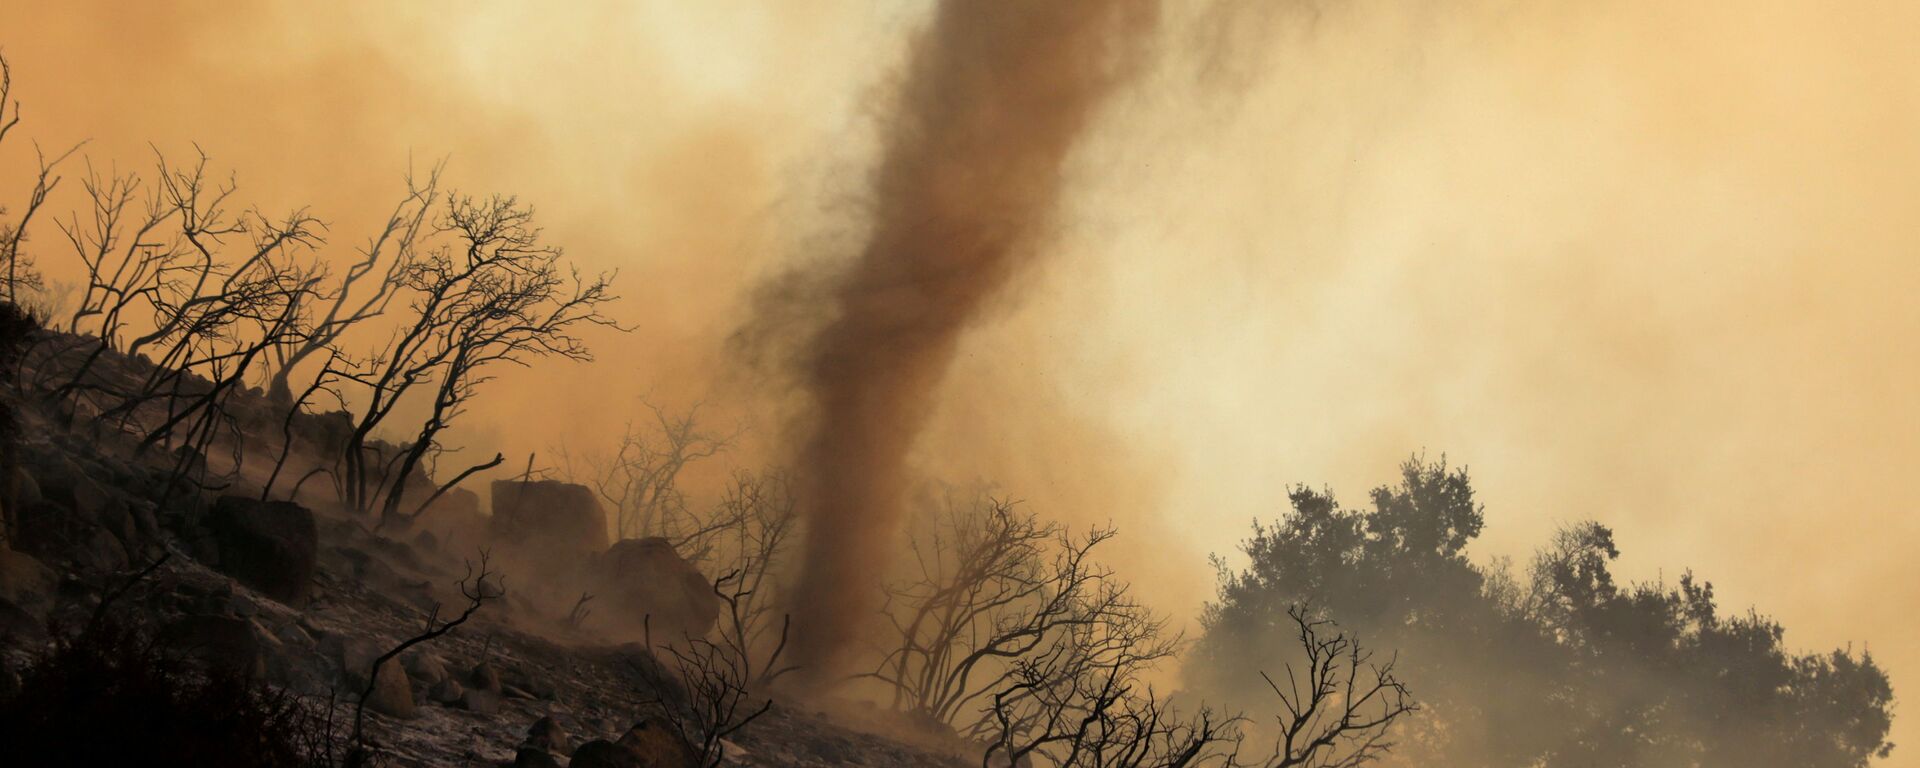 Пепельный вихрь во время природных пожаров в Калифорнии  - Sputnik Lietuva, 1920, 15.08.2021